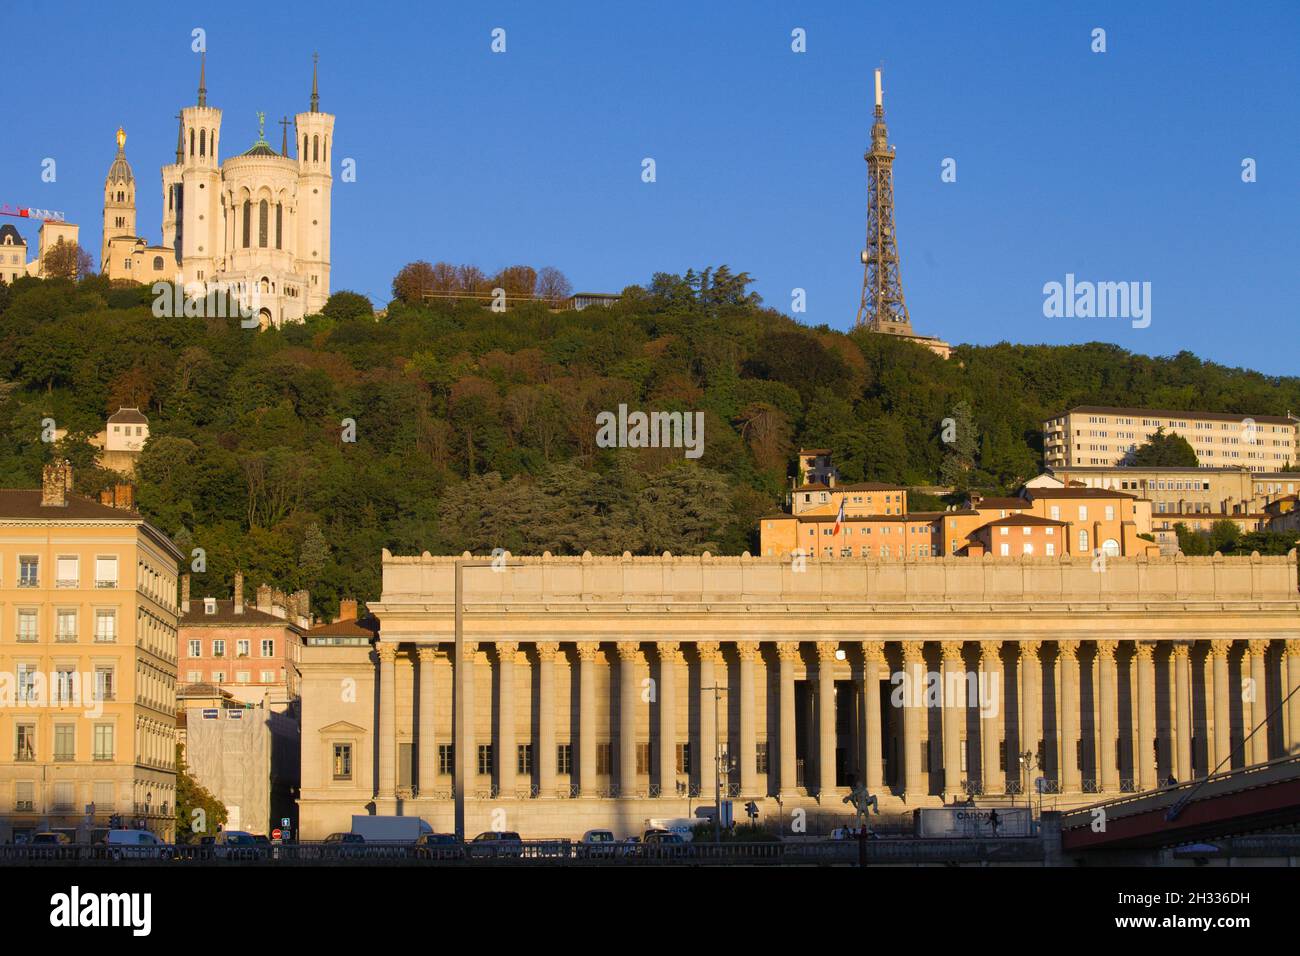 France, Lyon, Palais de Justice, Notre-Dame de Fourvière, basilica, Stock Photo